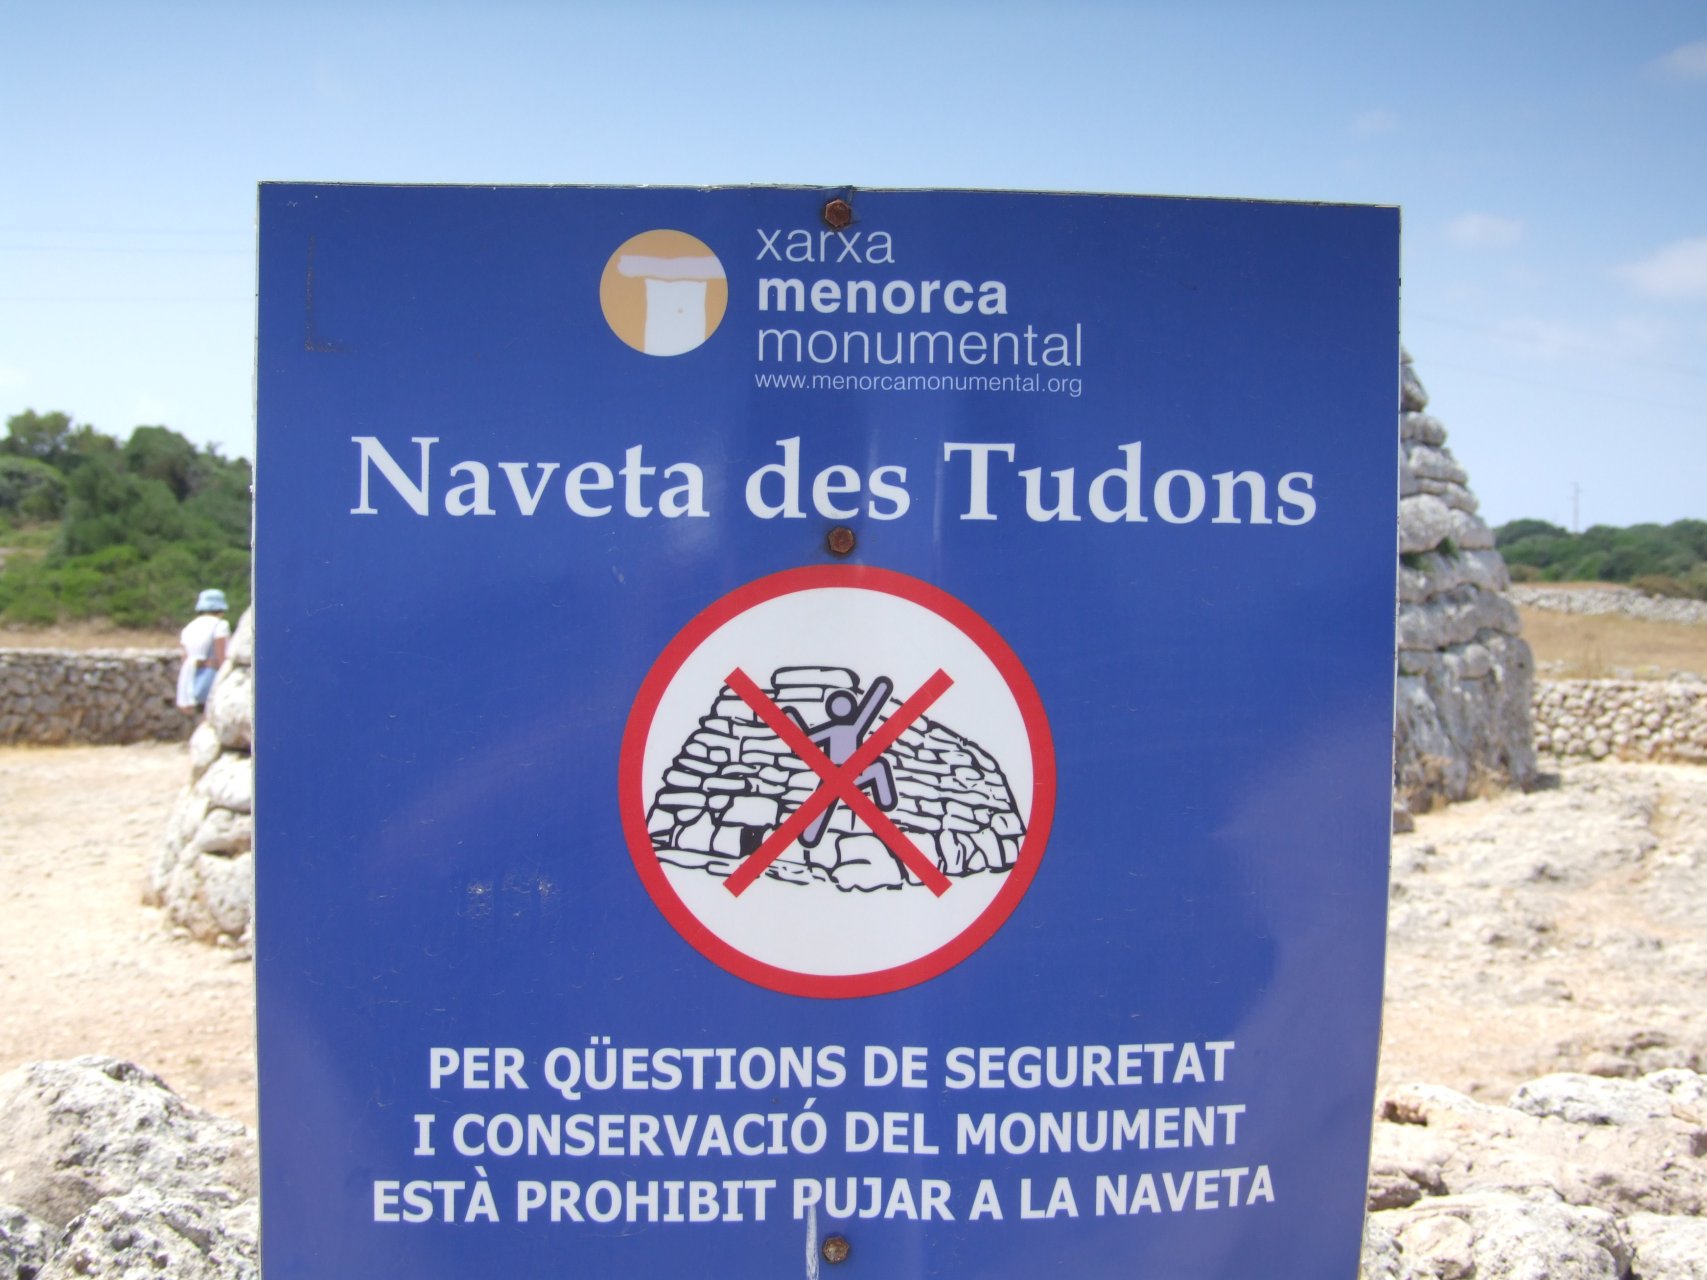 Tablica informacyjna przed Naveta des Tudons